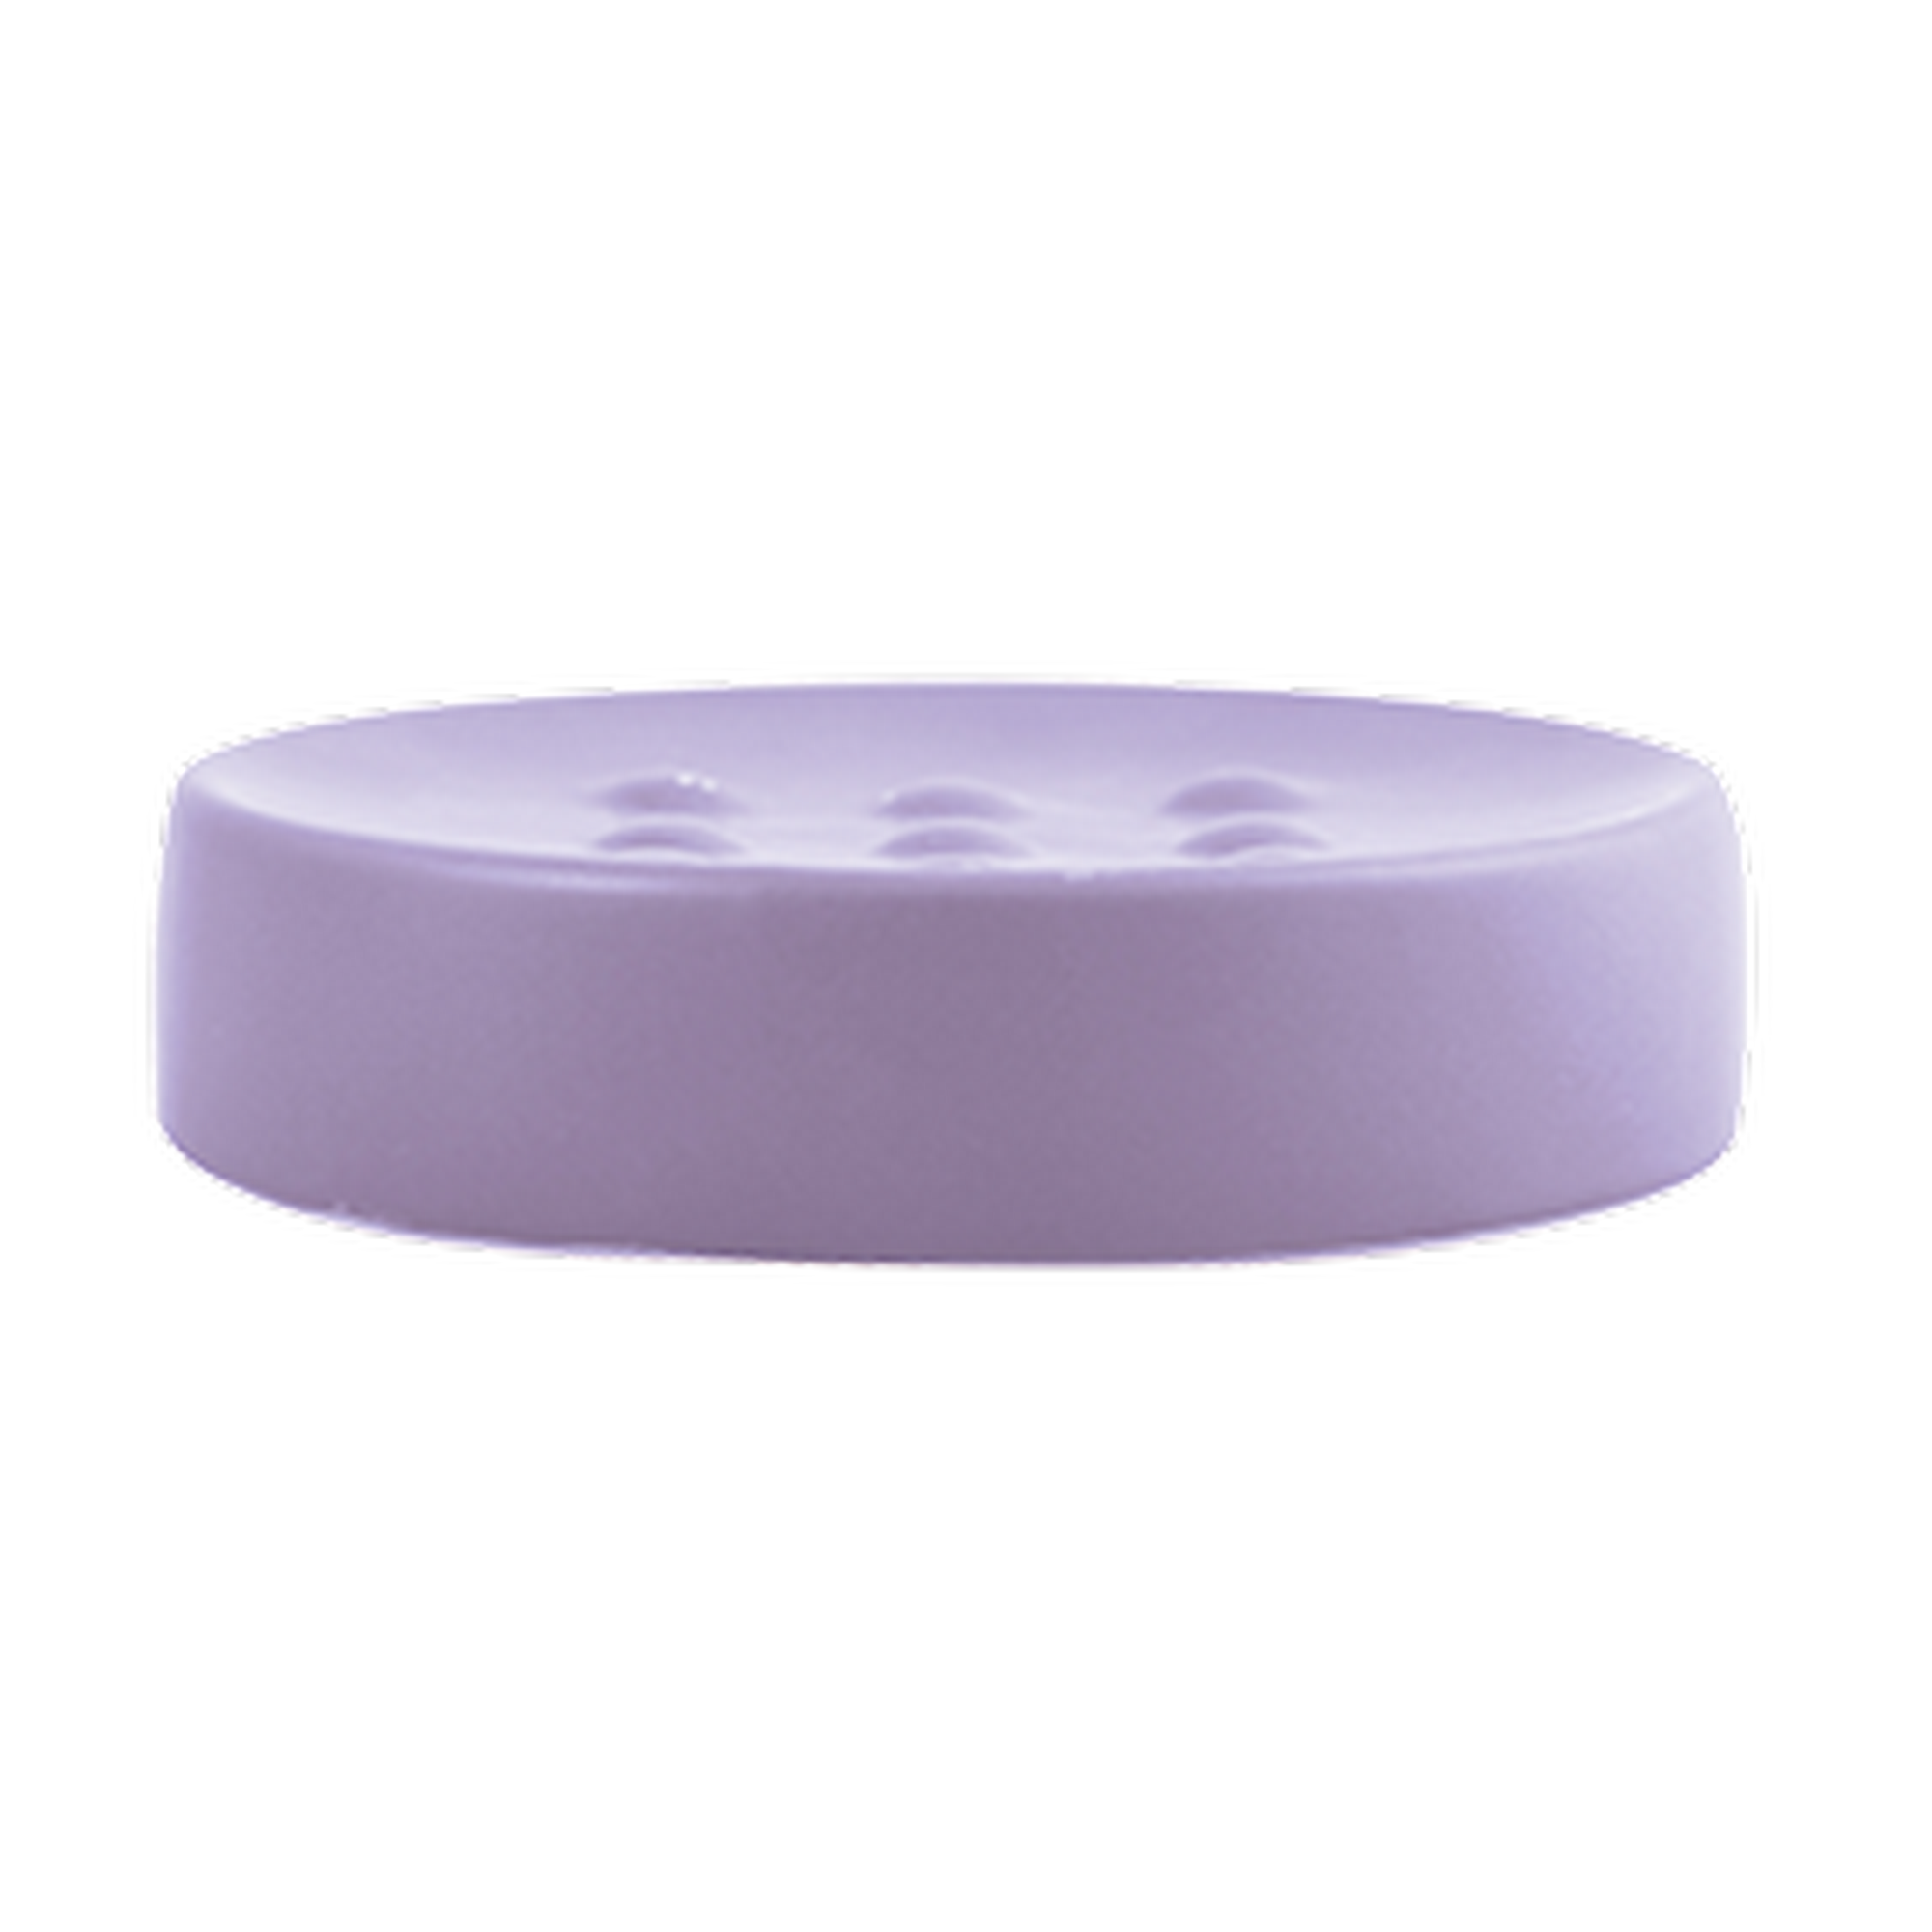 Seifenschale 'Tube' Porzellan lavendel Ø 11 x 2,6 cm + product picture